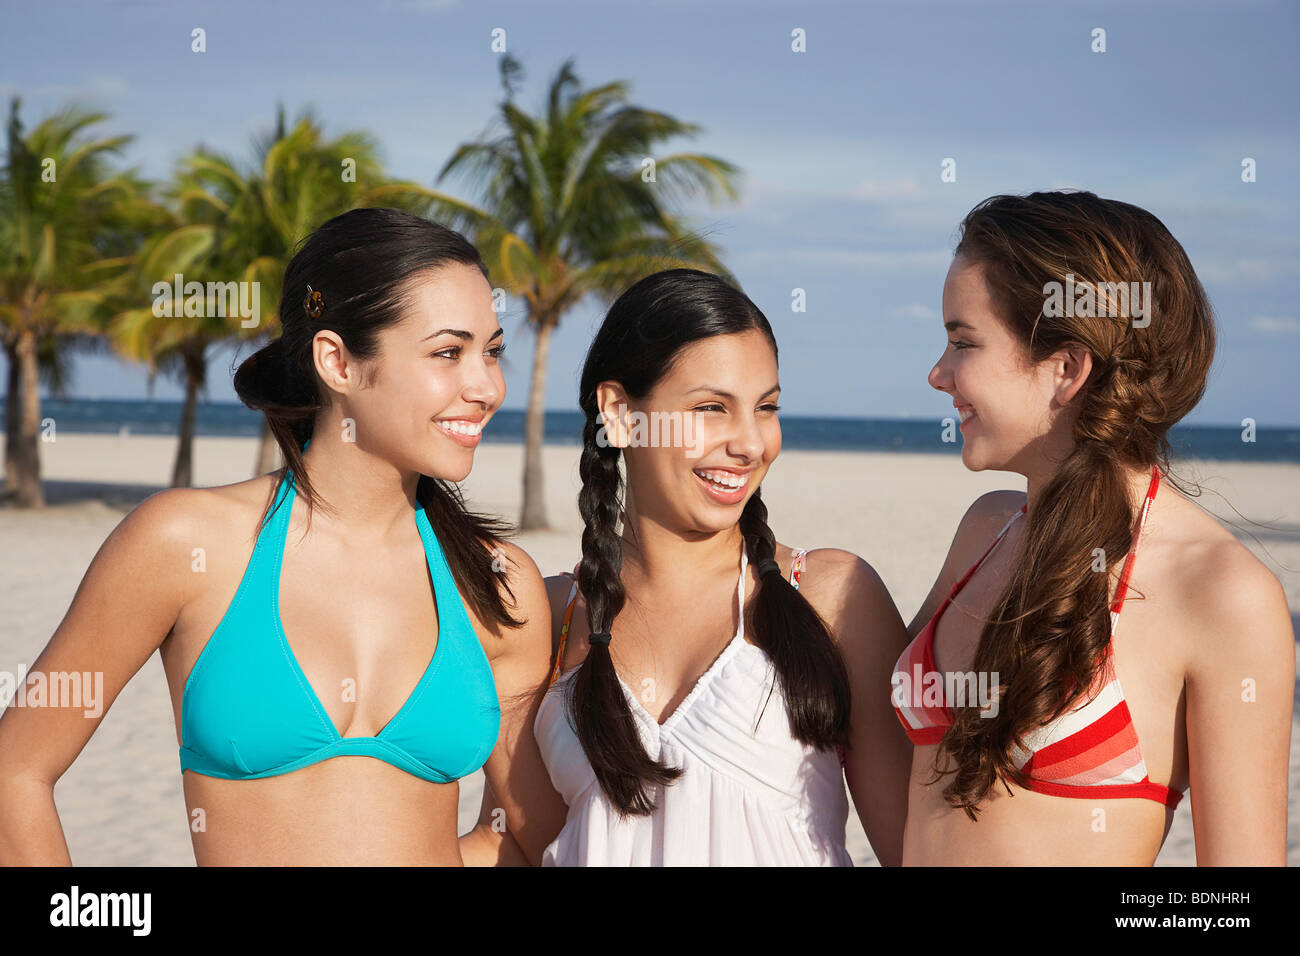 Three teenage girls (16-17) wearing bikinis, standing on beach, portrait  Stock Photo - Alamy